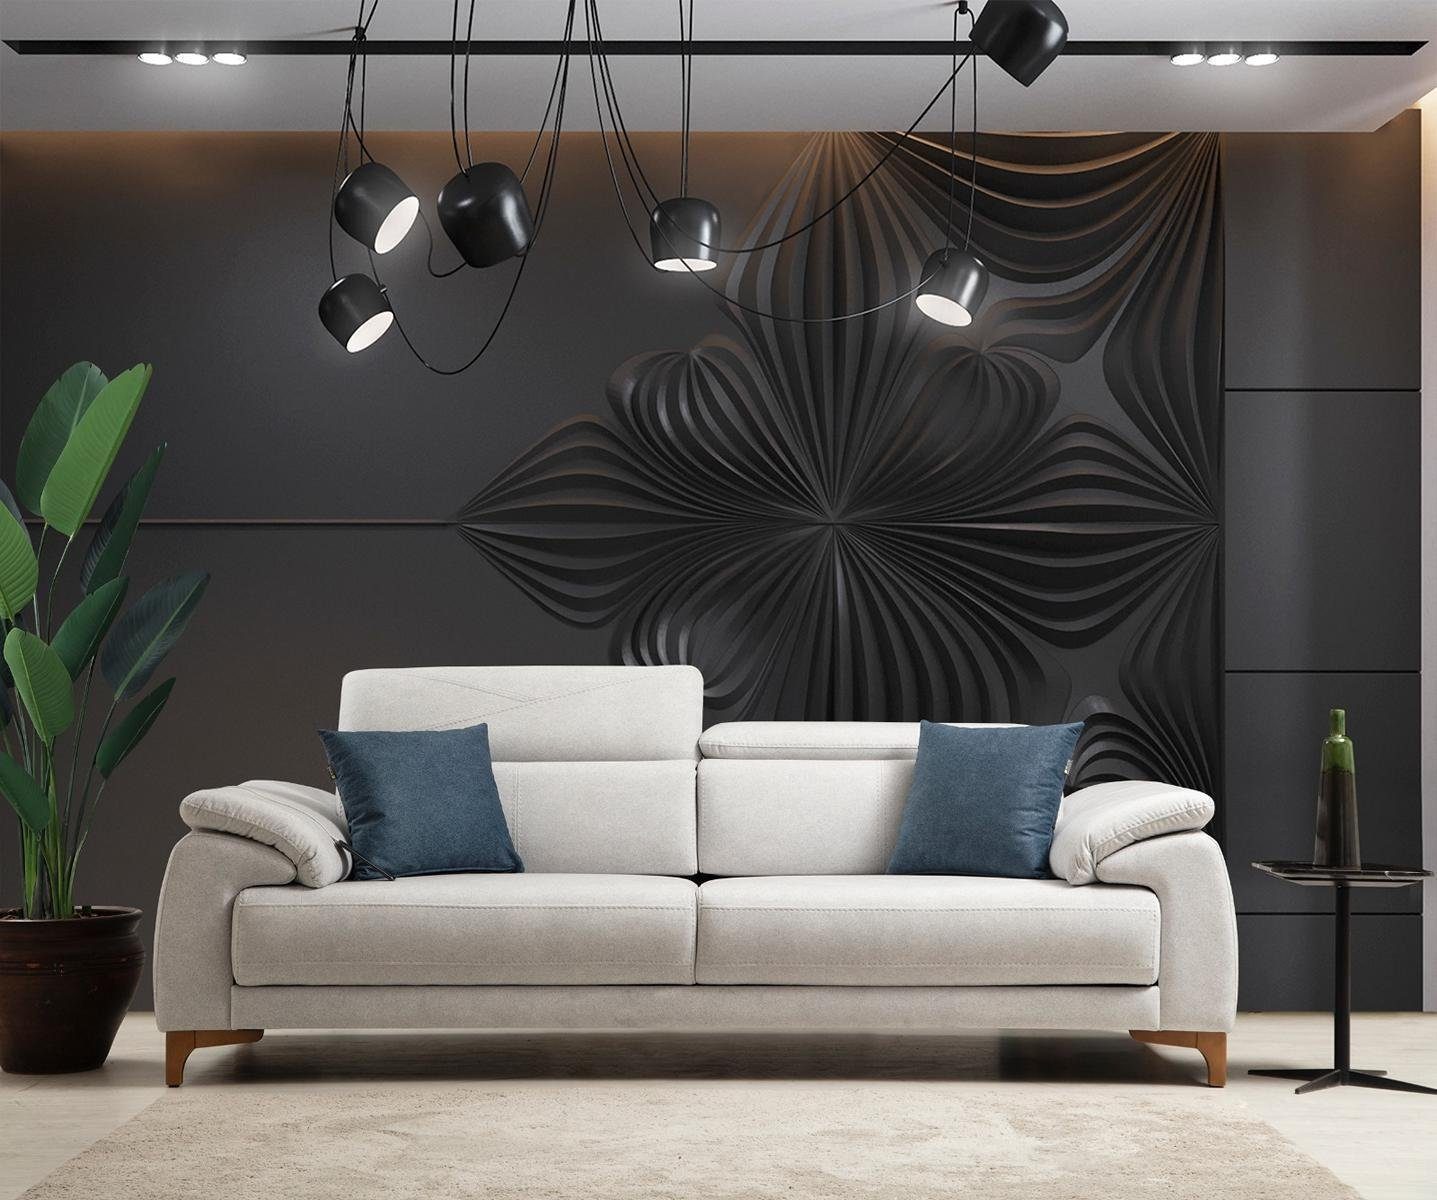 JVmoebel 3-Sitzer Grau Sofa Wohnzimmer Luxus Polstersofa Design Modern Möbel Neu, 1 Teile, Made in Europa